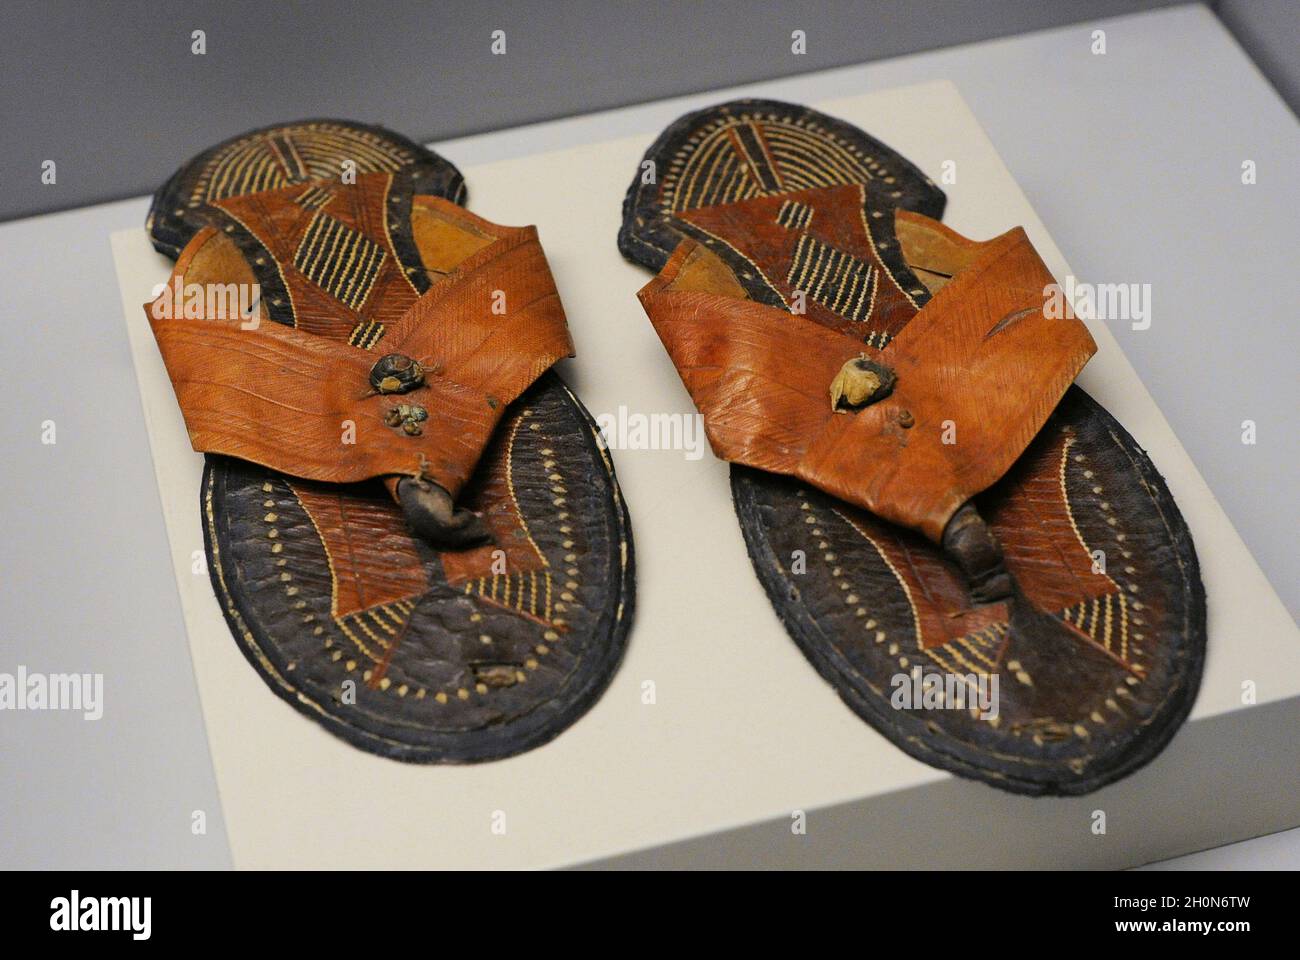 Paire de sandales. Fabriqué en cuir. 19e siècle. Le Maroc, l'Afrique du Nord. Musée de l'Amérique. Madrid, Espagne. Banque D'Images